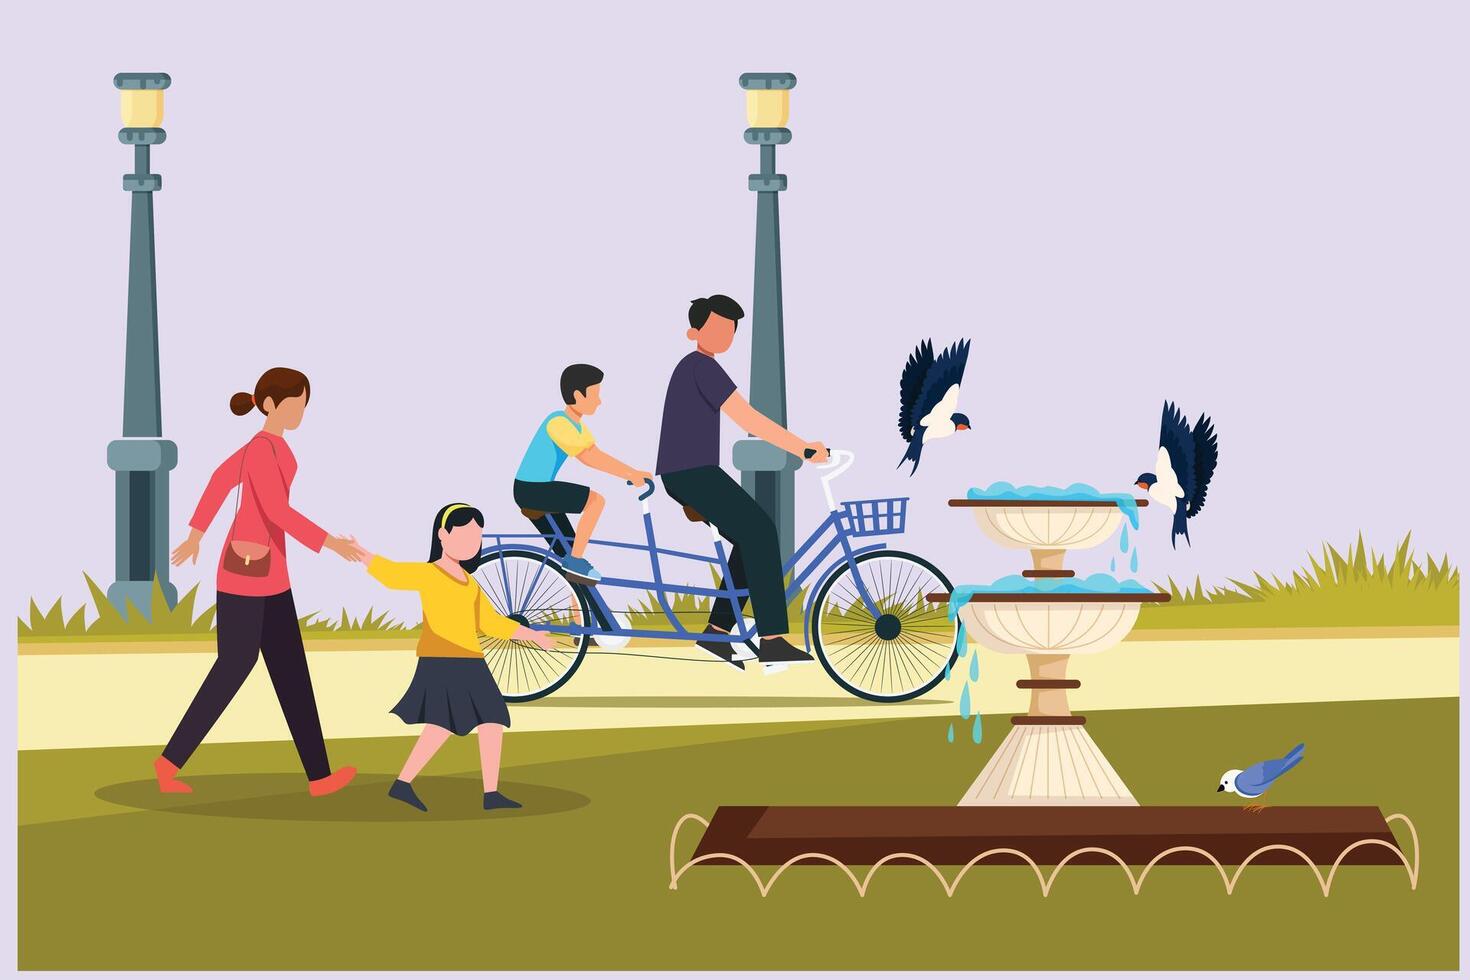 persone a passeggio, giocando, equitazione bicicletta a città parco. attività all'aperto concetto colorato piatto vettore illustrazione isolato.